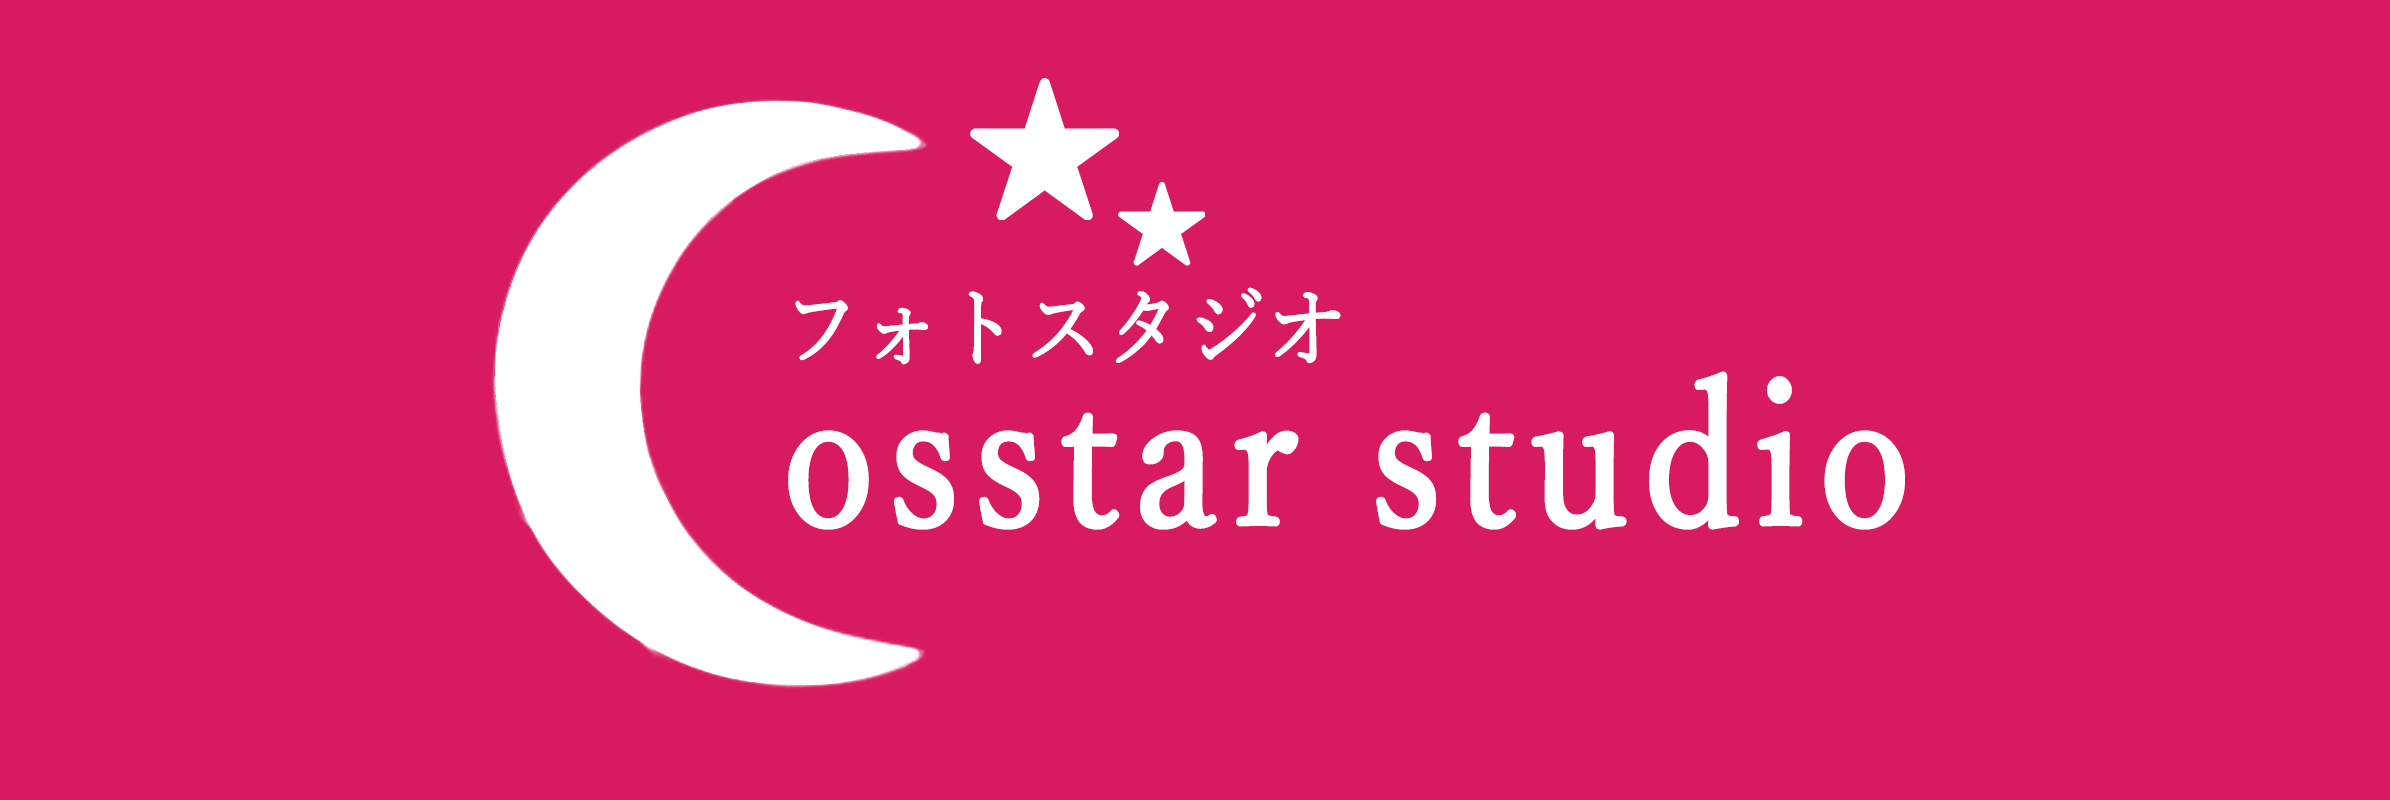 コススタ Cosplay Star Studio